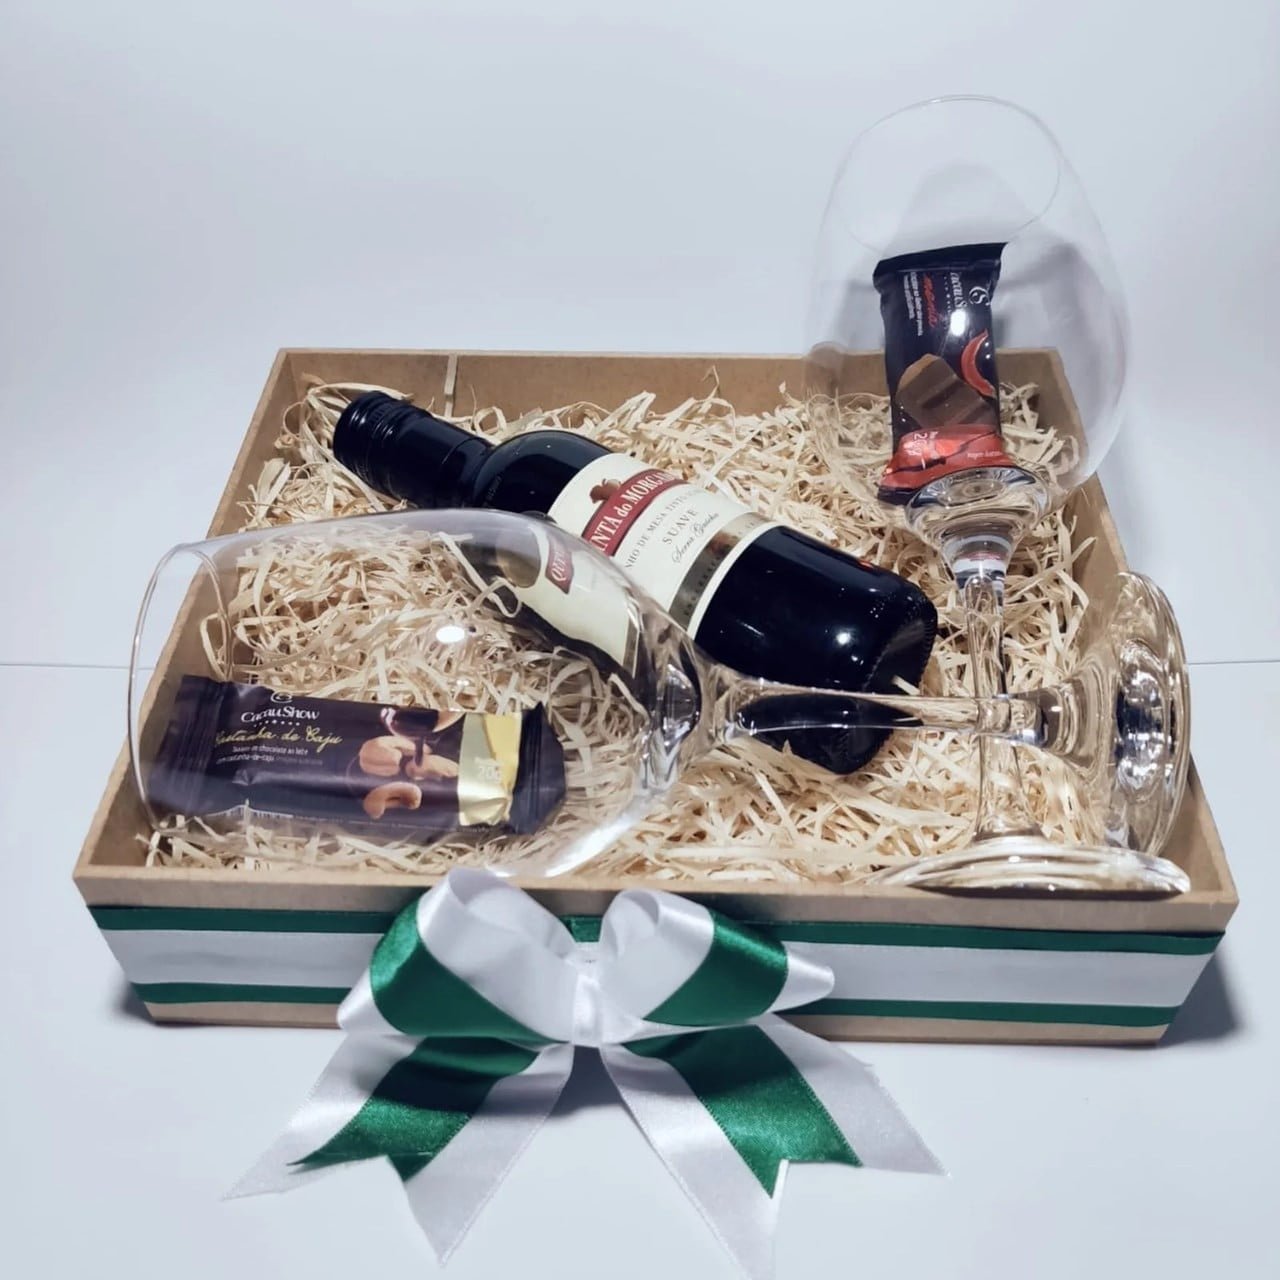 caixa-comemorativa-com-vinho-e-chocolates-309-1-20201111140535-min